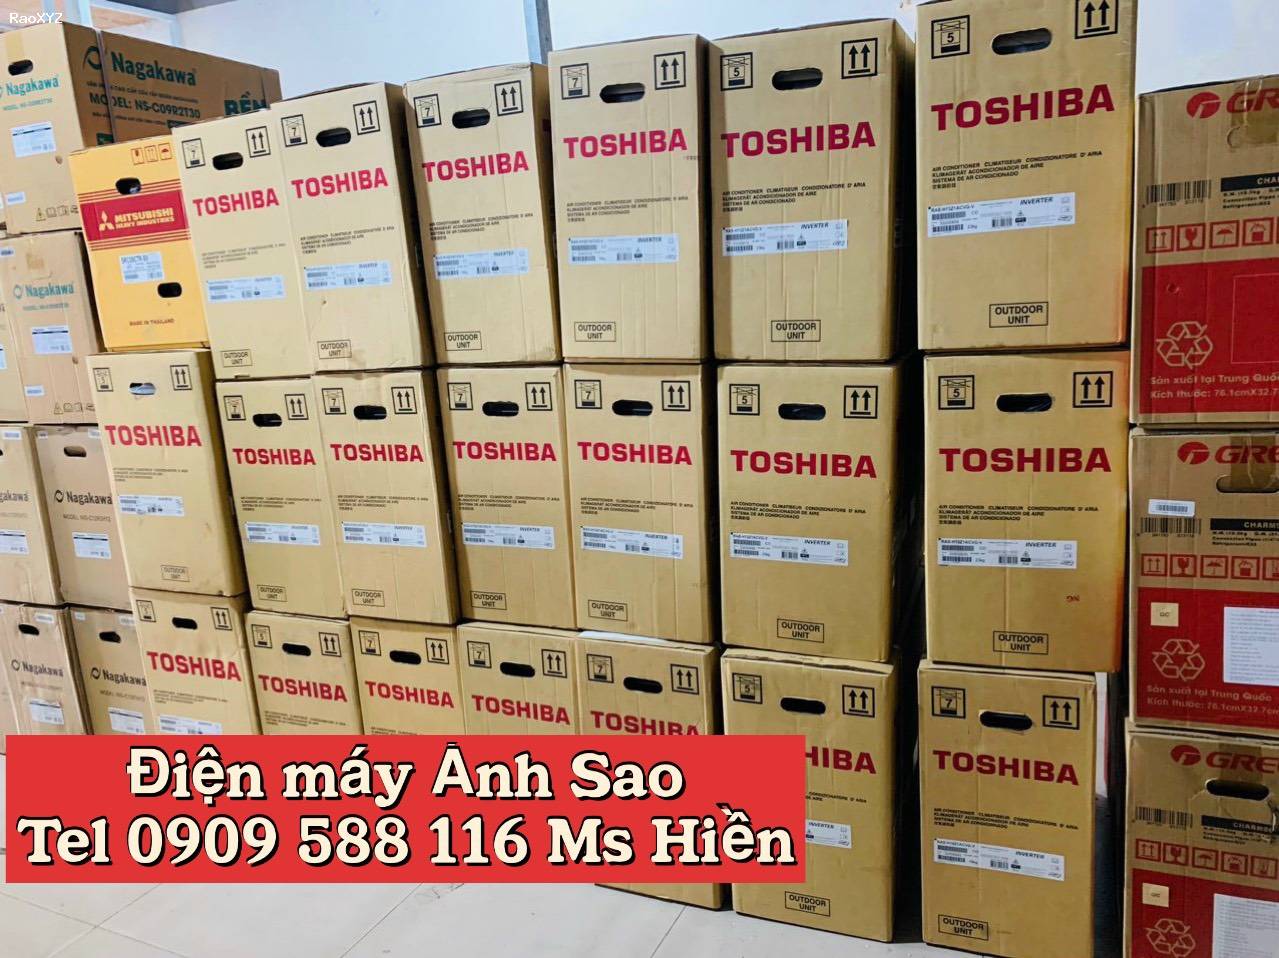 Máy lạnh Toshiba - Lắp đặt máy lạnh Toshiba tại Long An